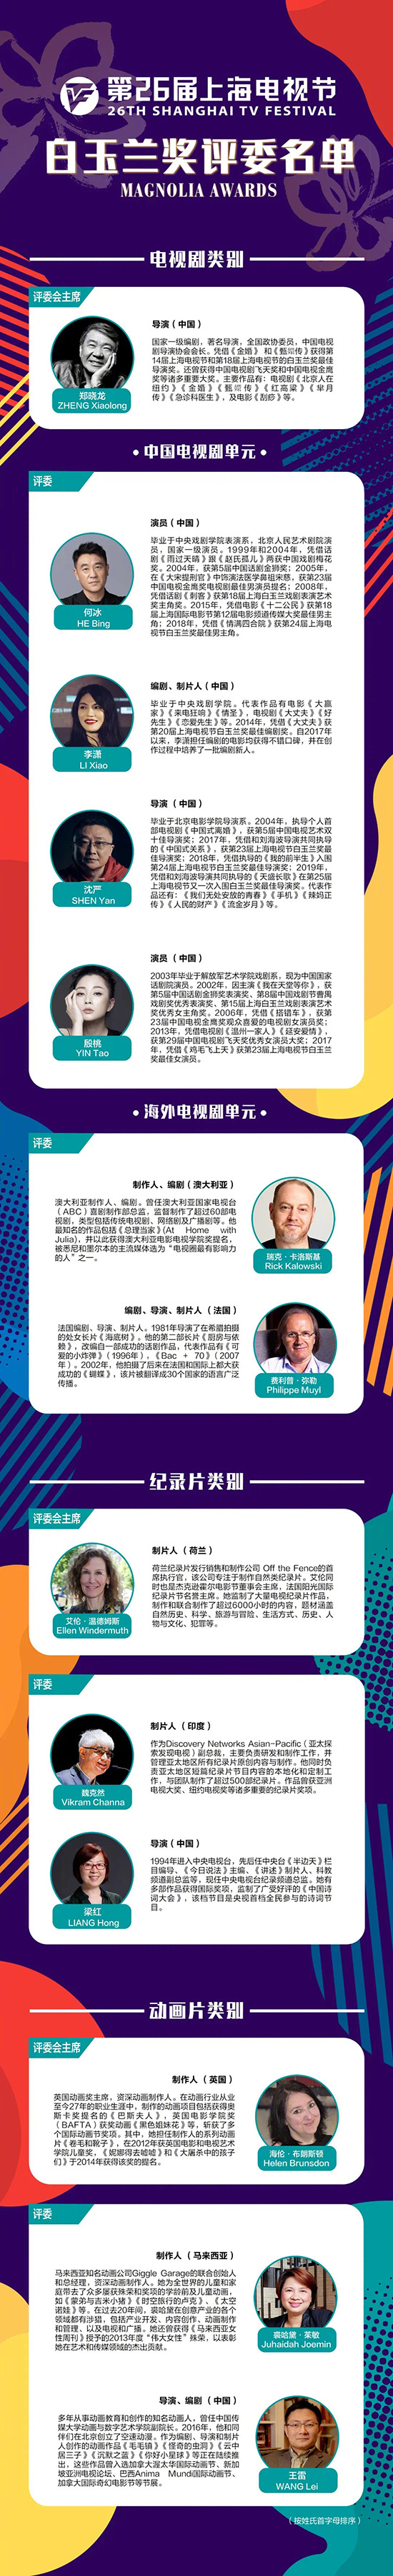 第26届上海电视节将于8.3-8.7举行 评委名单颁布